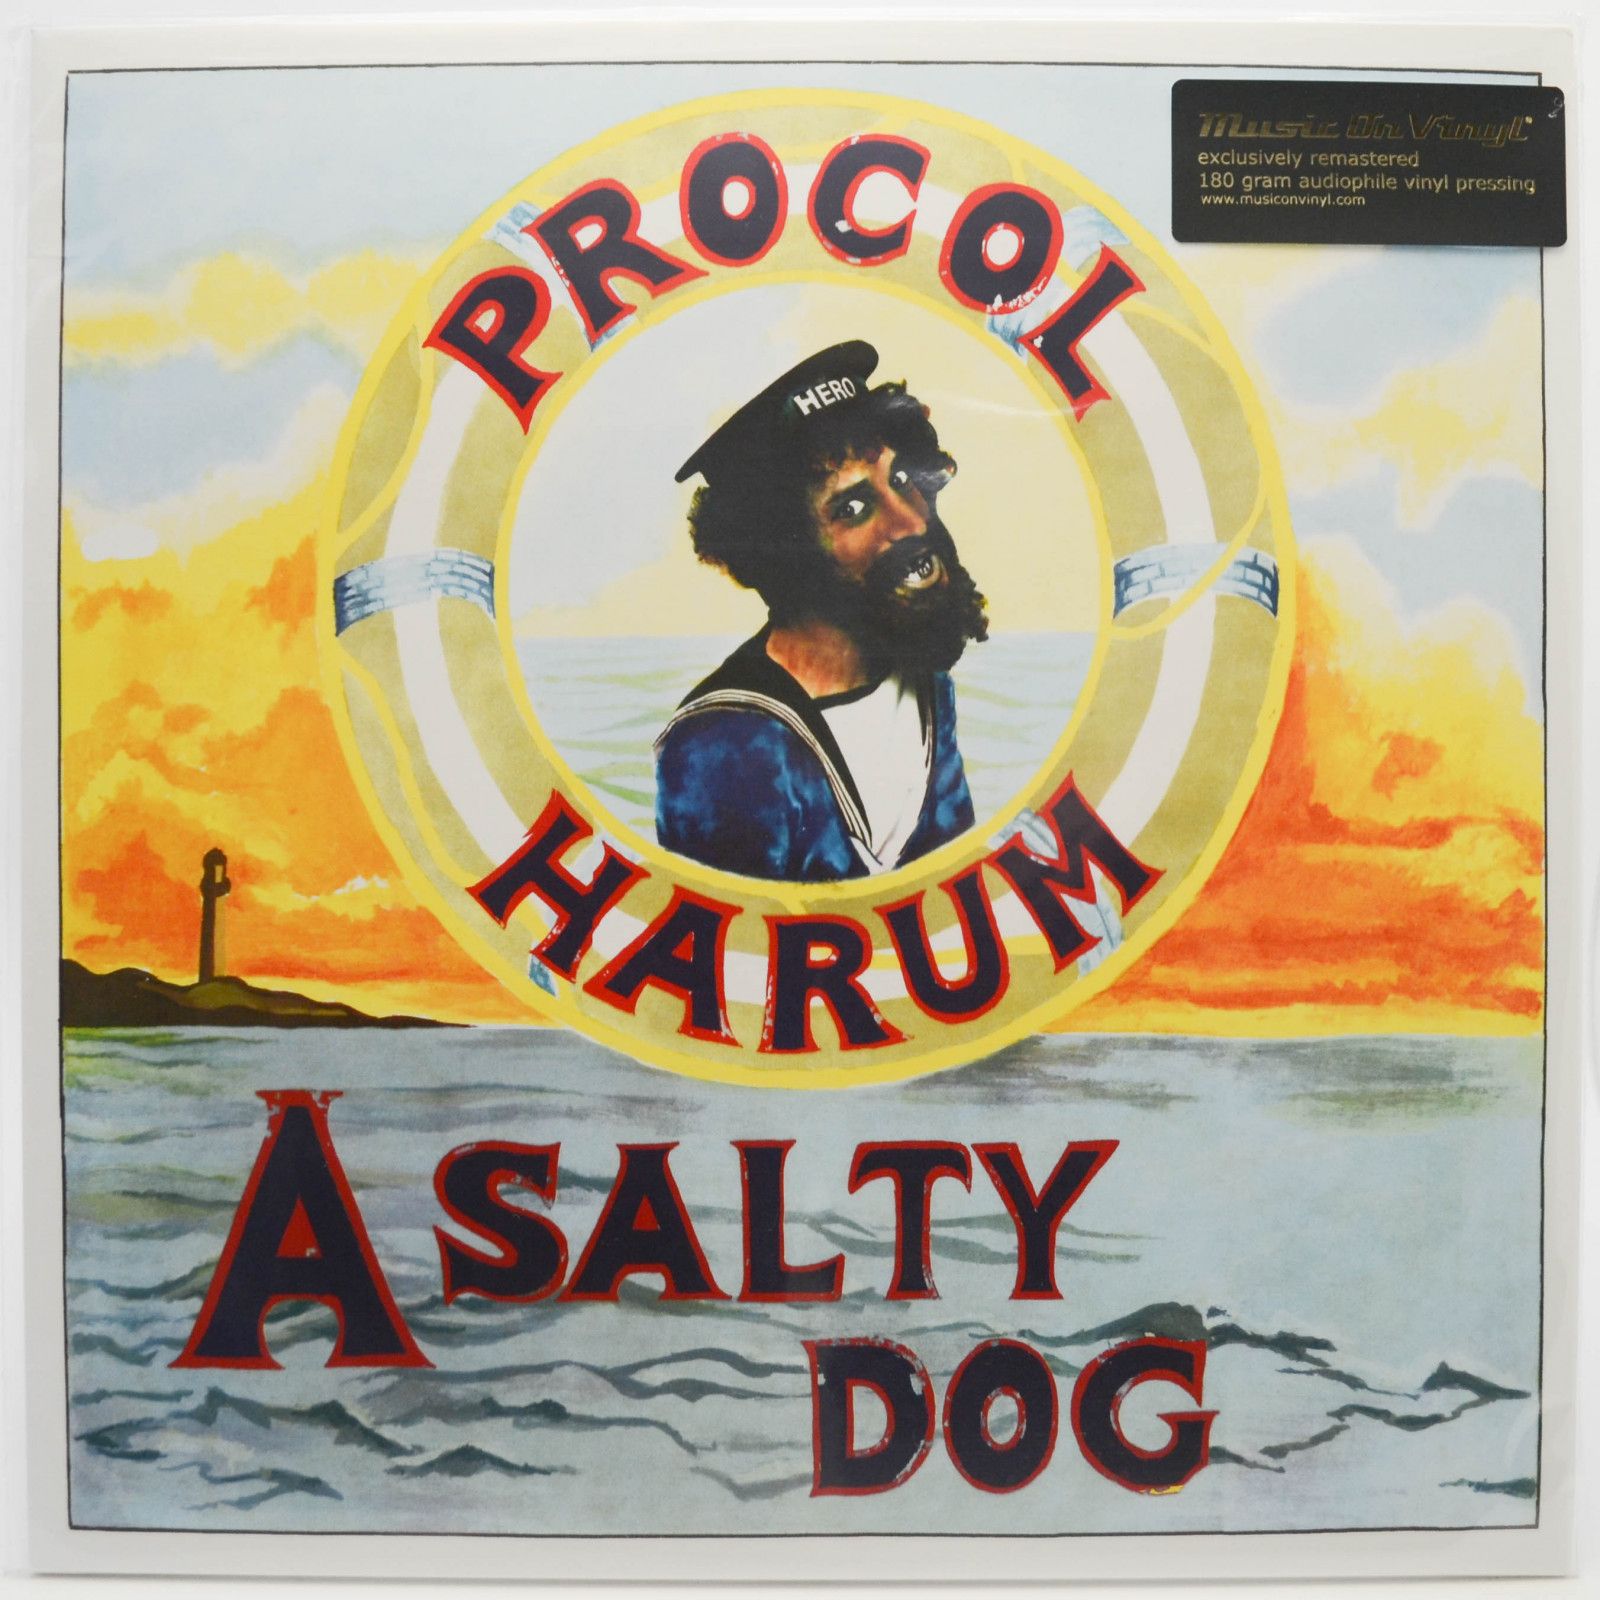 Procol Harum — A Salty Dog, 1969